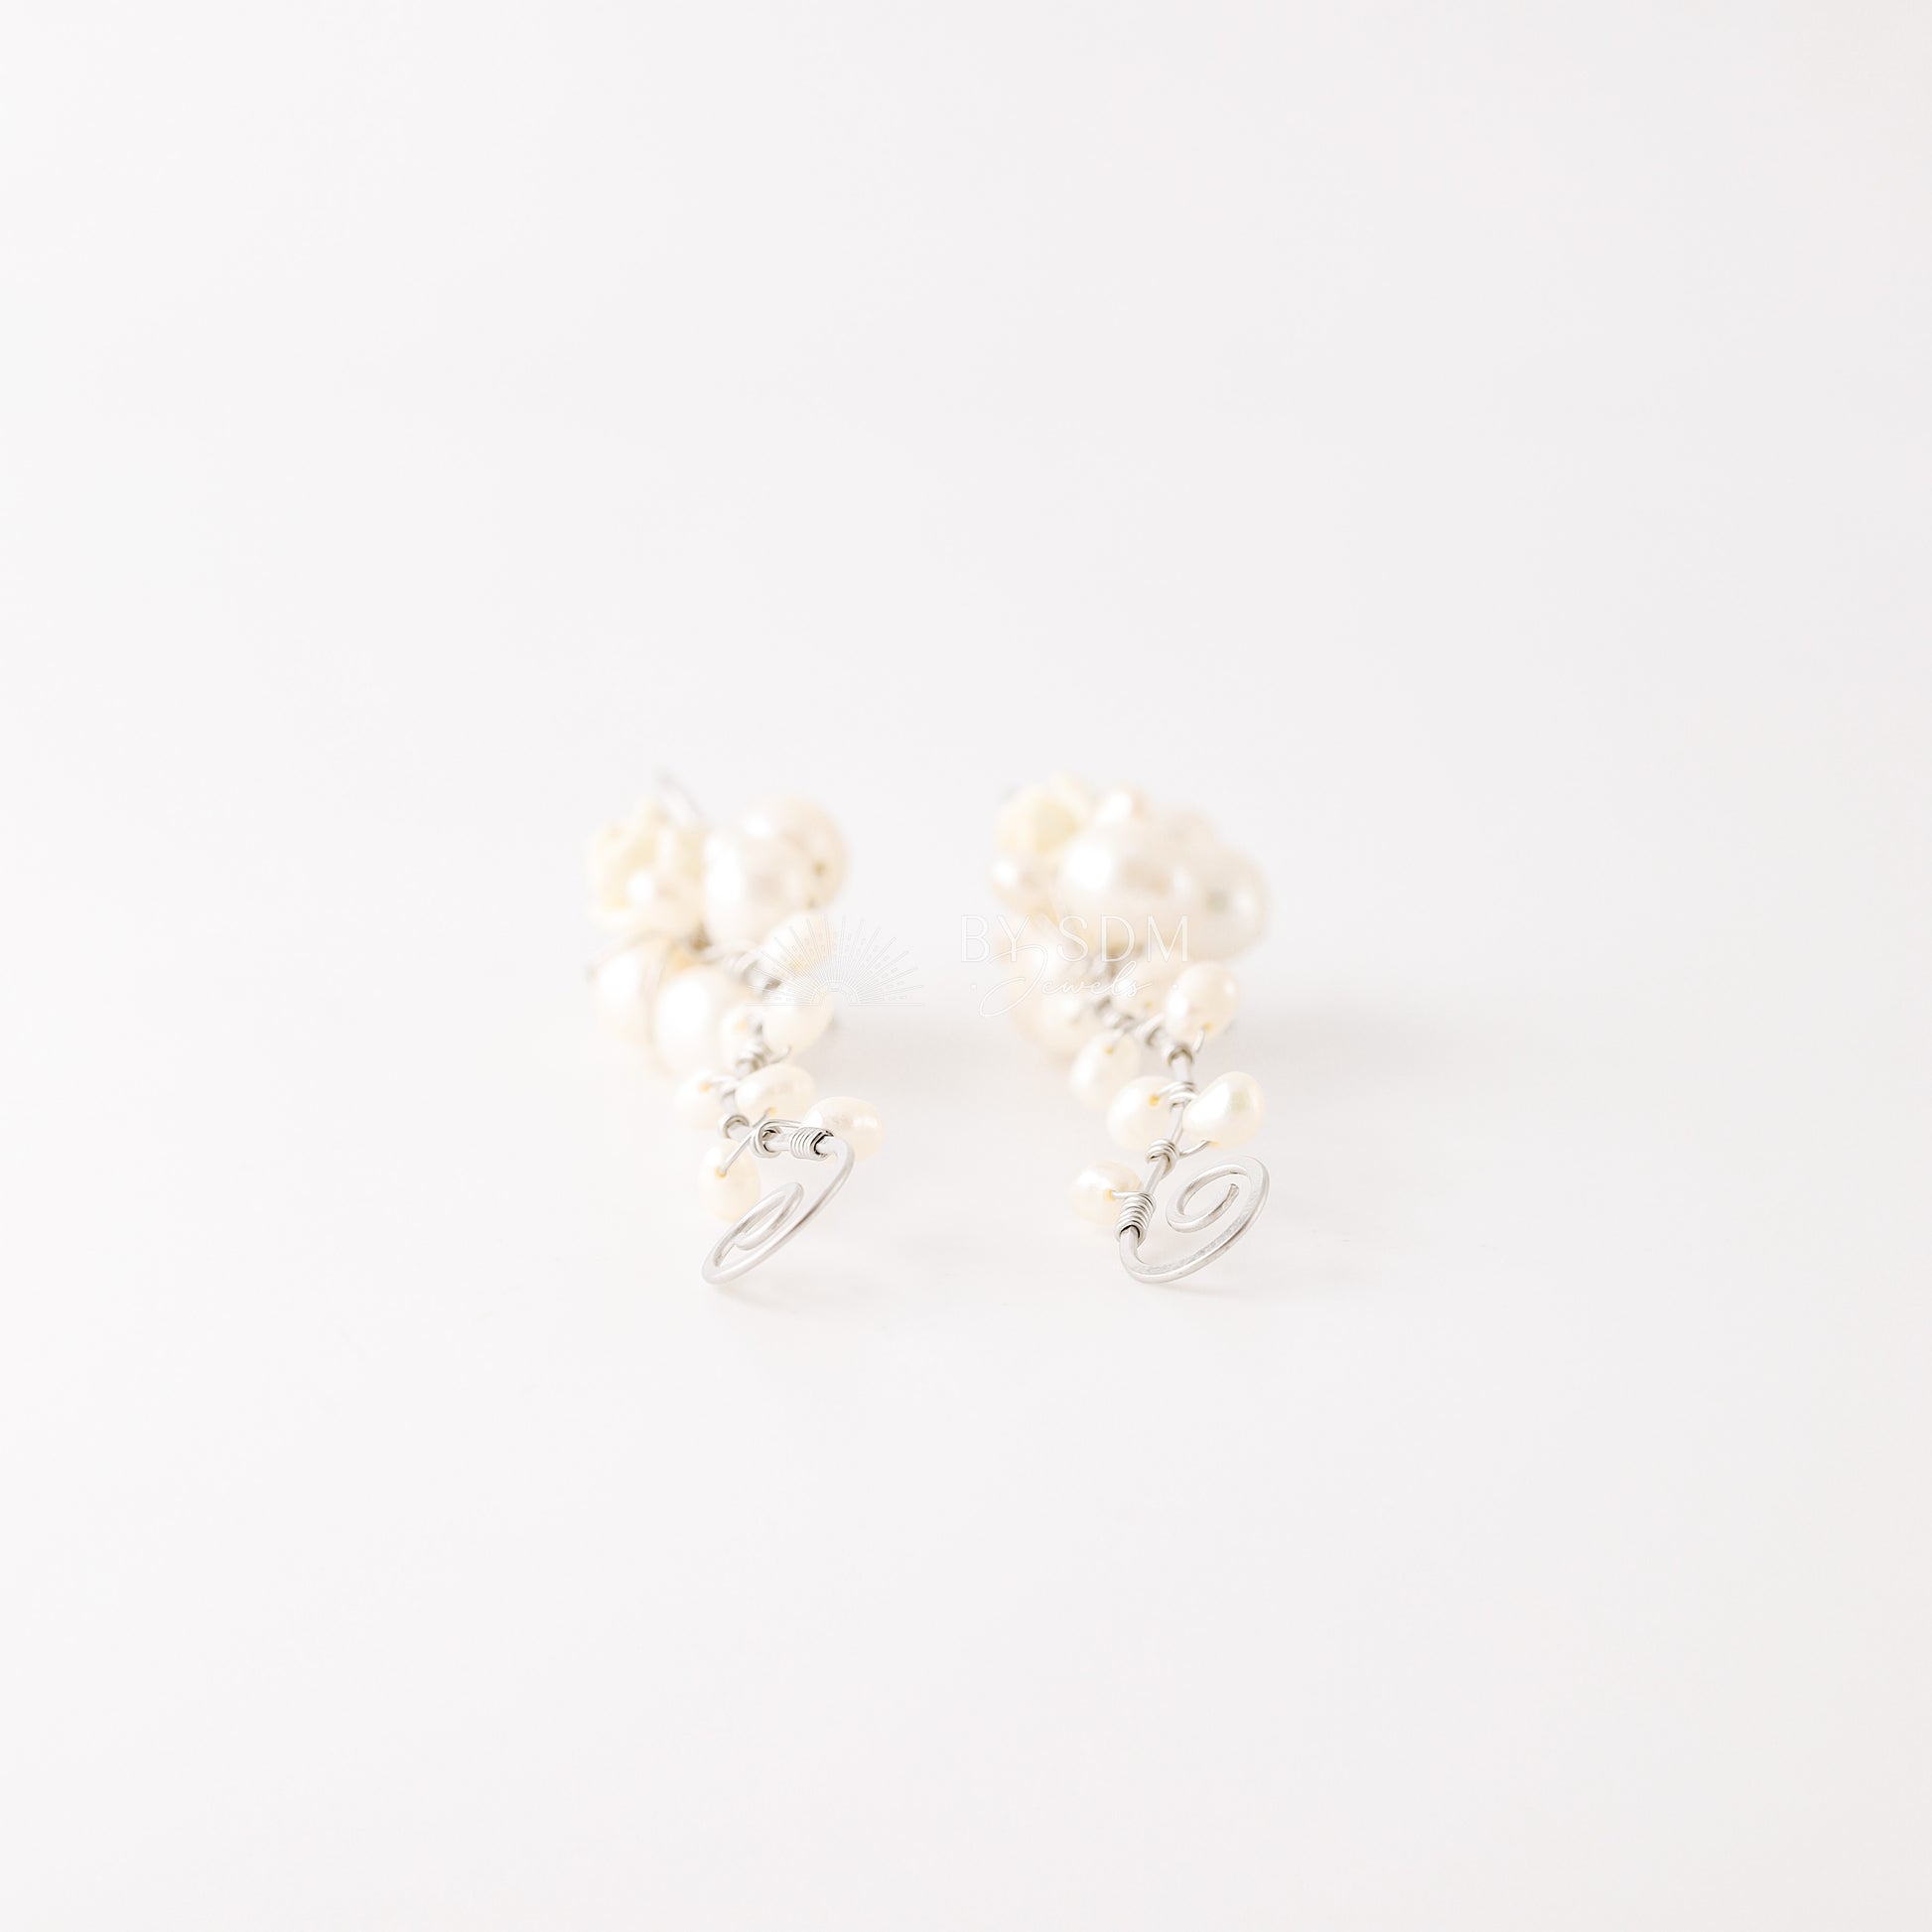 Floral Pearl Earrings • Floral Pearl Bridal Earrings • Floral Wedding Earrings • Floral Pearl Wedding Earrings • BYSDMJEWELS